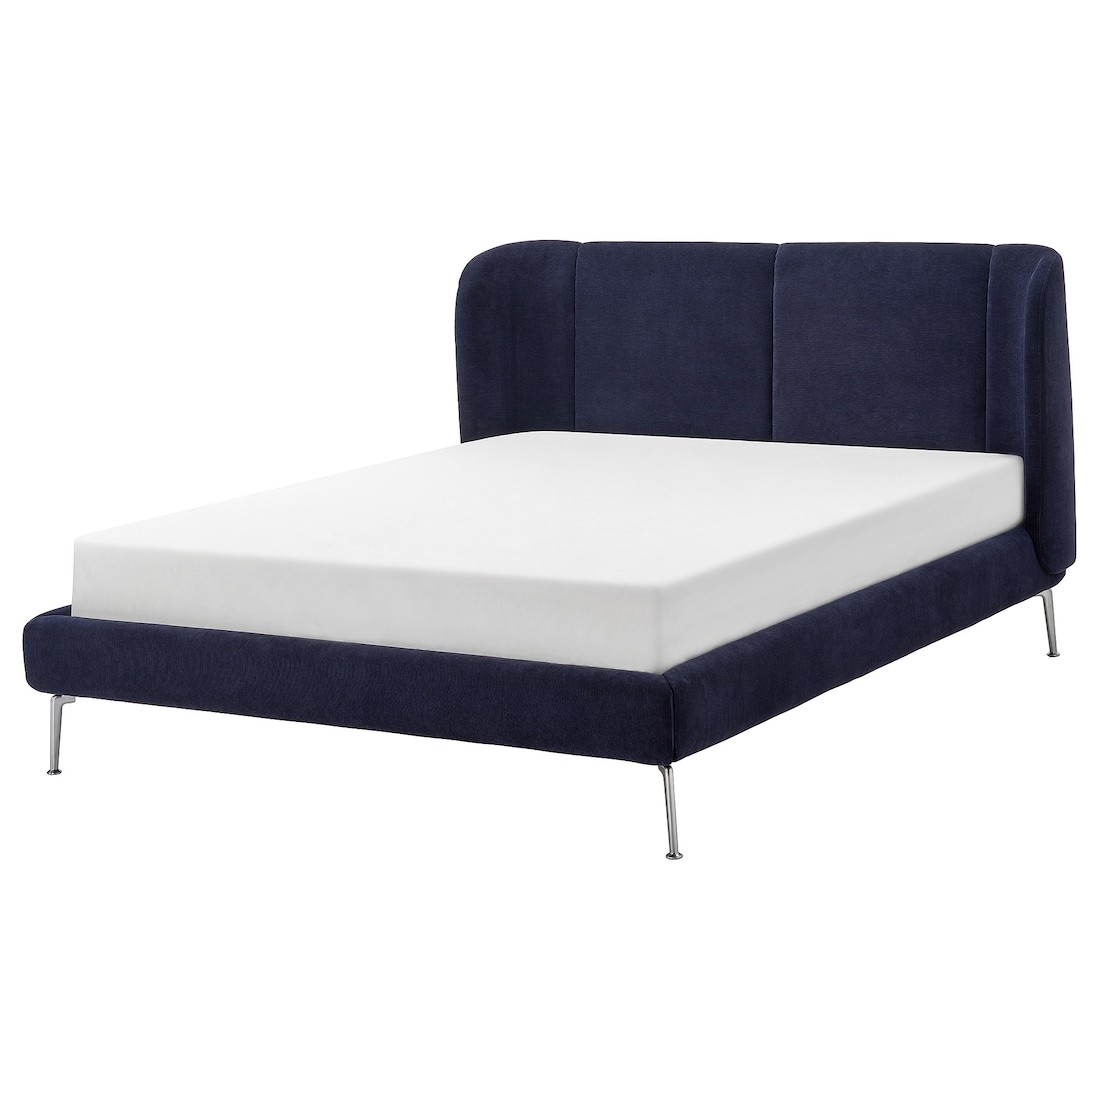 TUFJORD каркас ліжка з оббивкою, Таллміра чорно-блакитна, 160x200 см